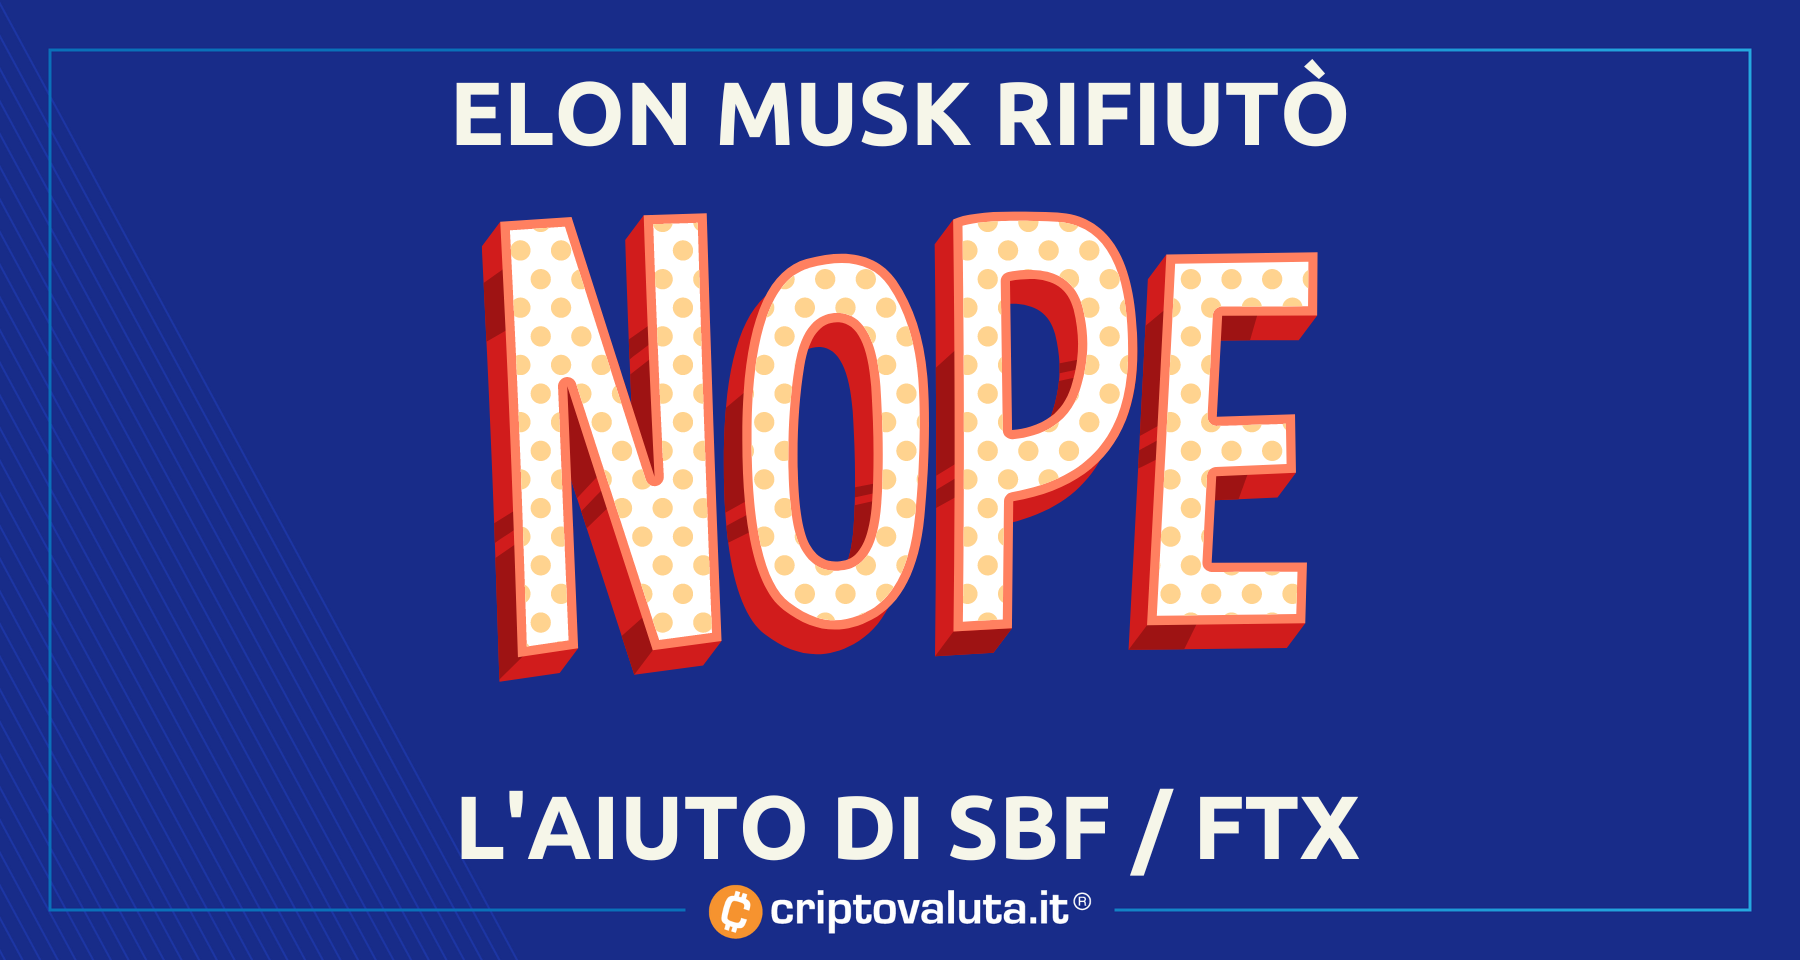 Anche Elon Musk contattato da SBF e FTX | C’erano trattative per Twitter!